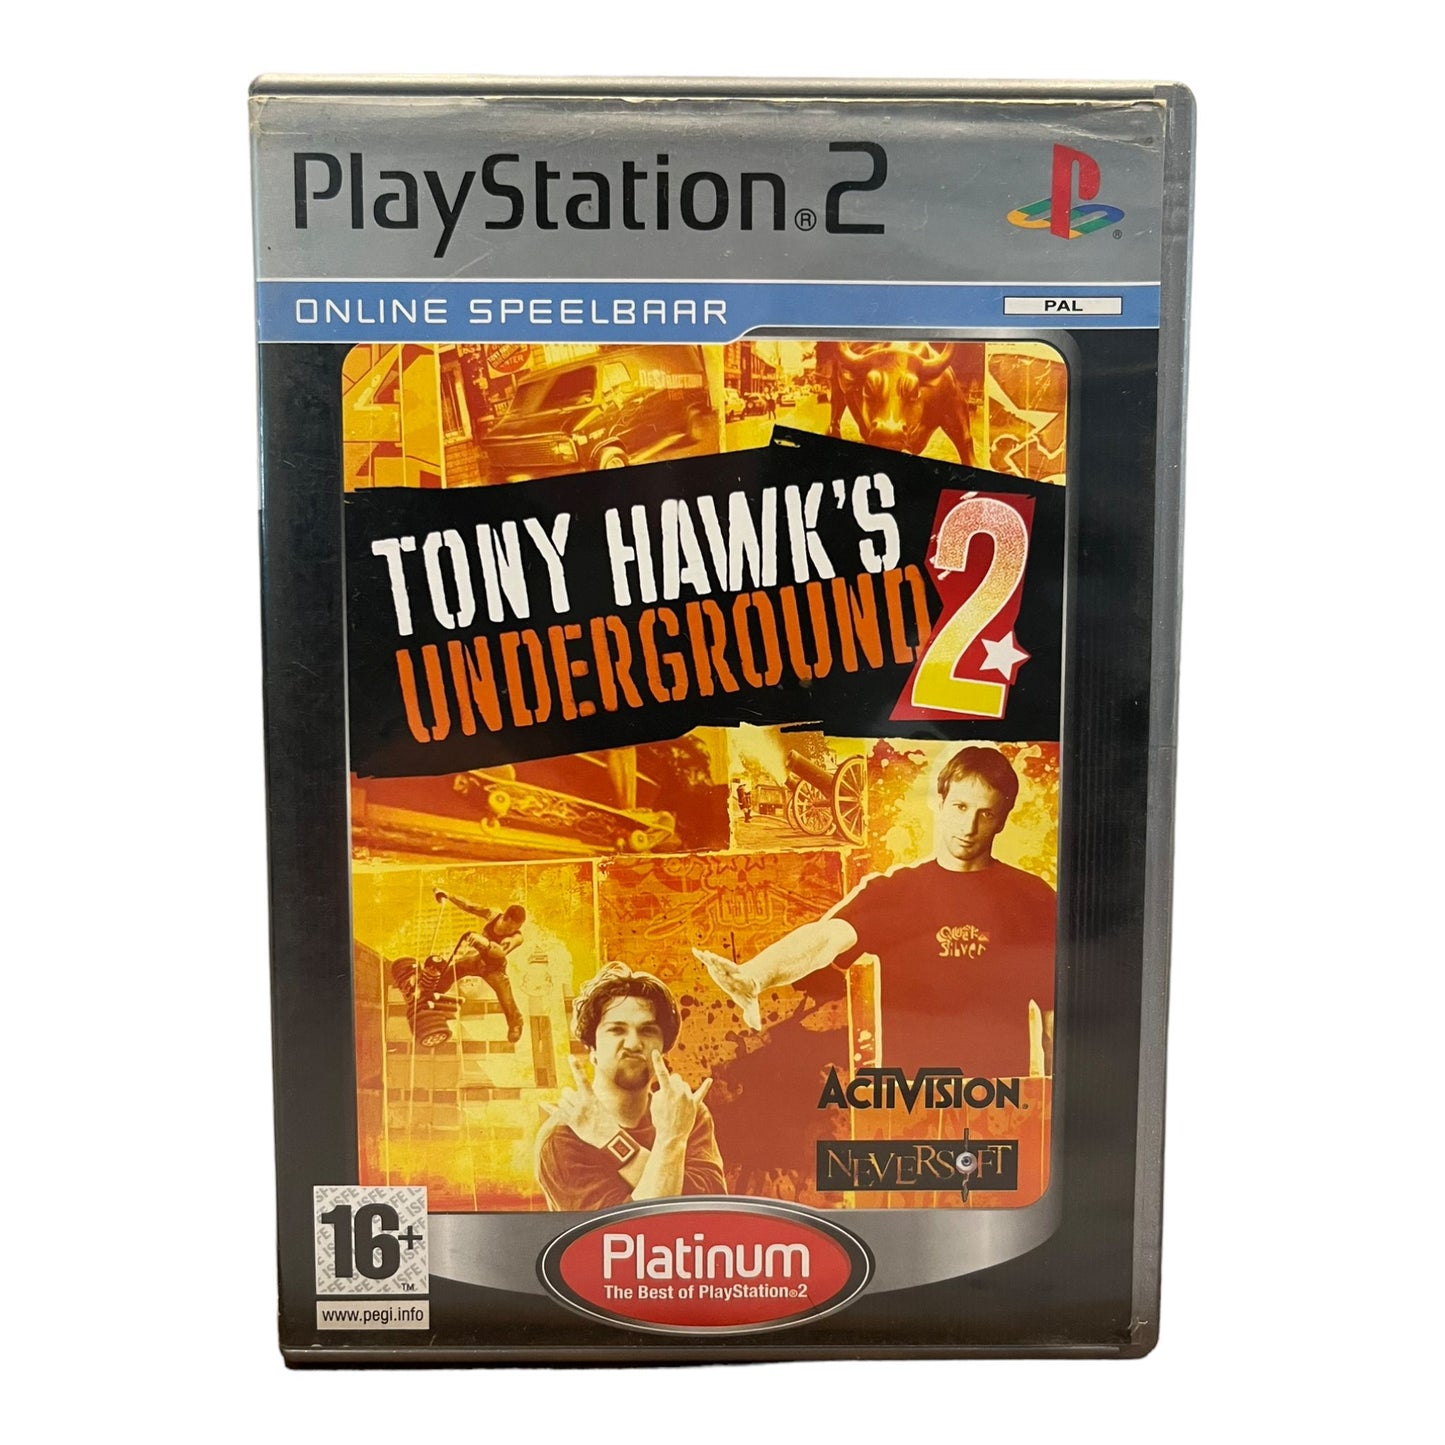 Tony hawk's Underground 2 - Platinum